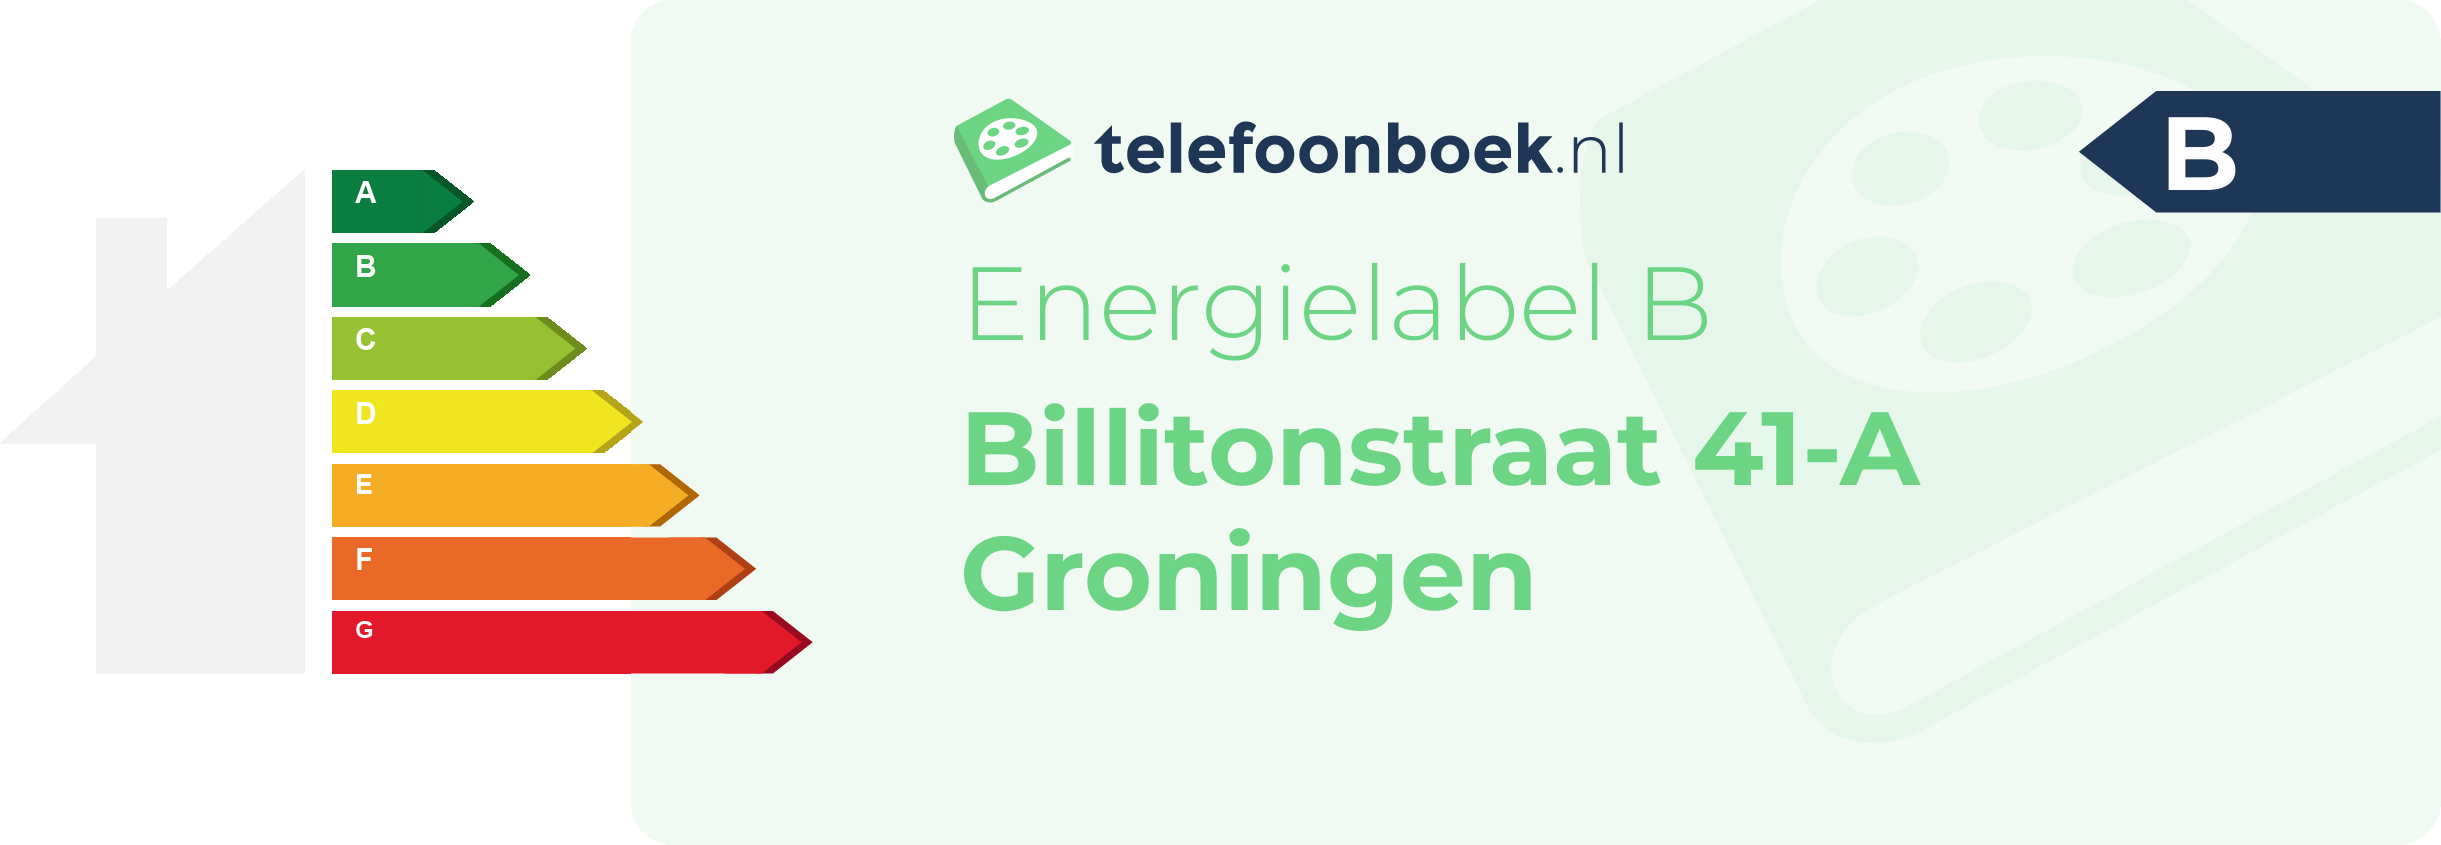 Energielabel Billitonstraat 41-A Groningen